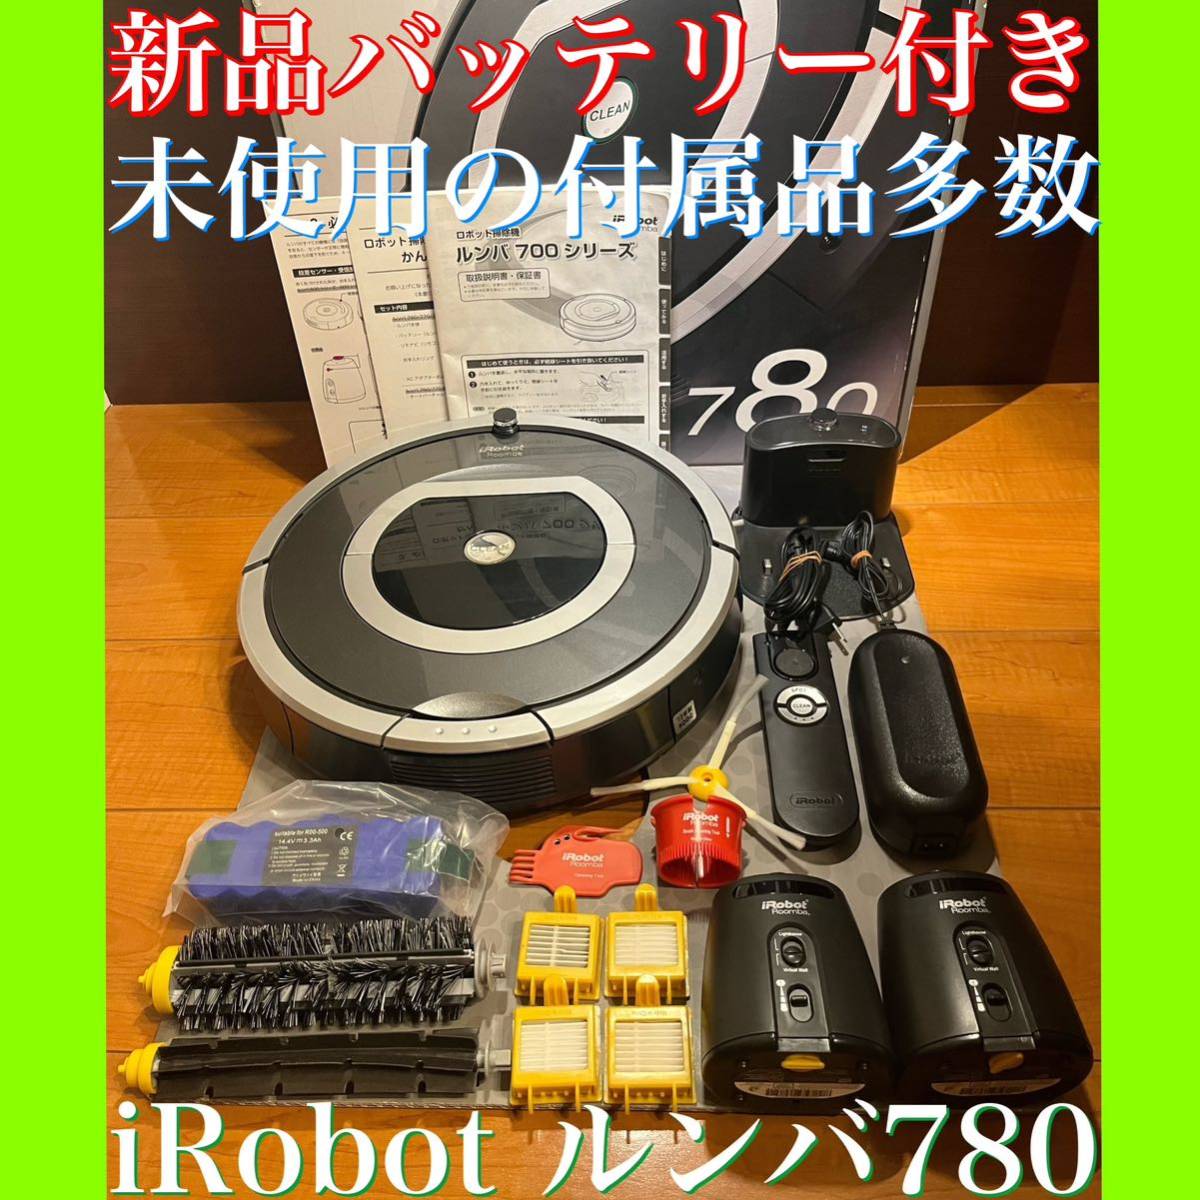 公式の店舗 ✨ iRobot Roomba ルンバ 500.600シリーズ 基板